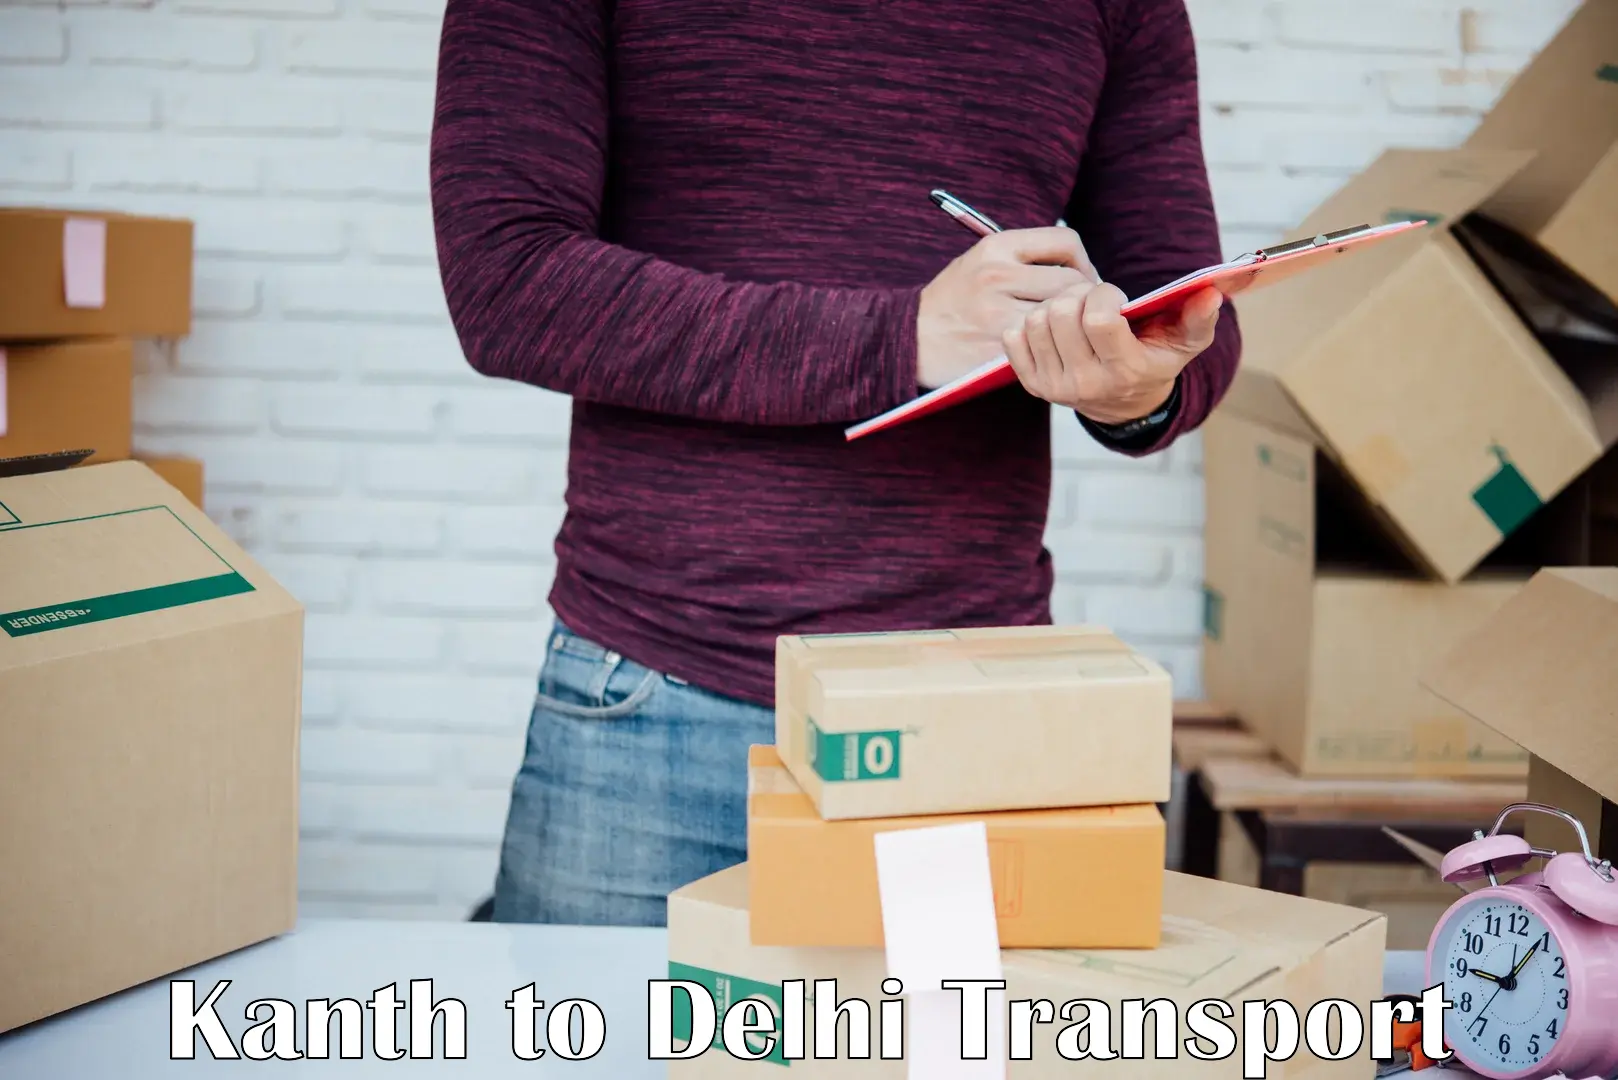 Two wheeler parcel service Kanth to Jamia Millia Islamia New Delhi